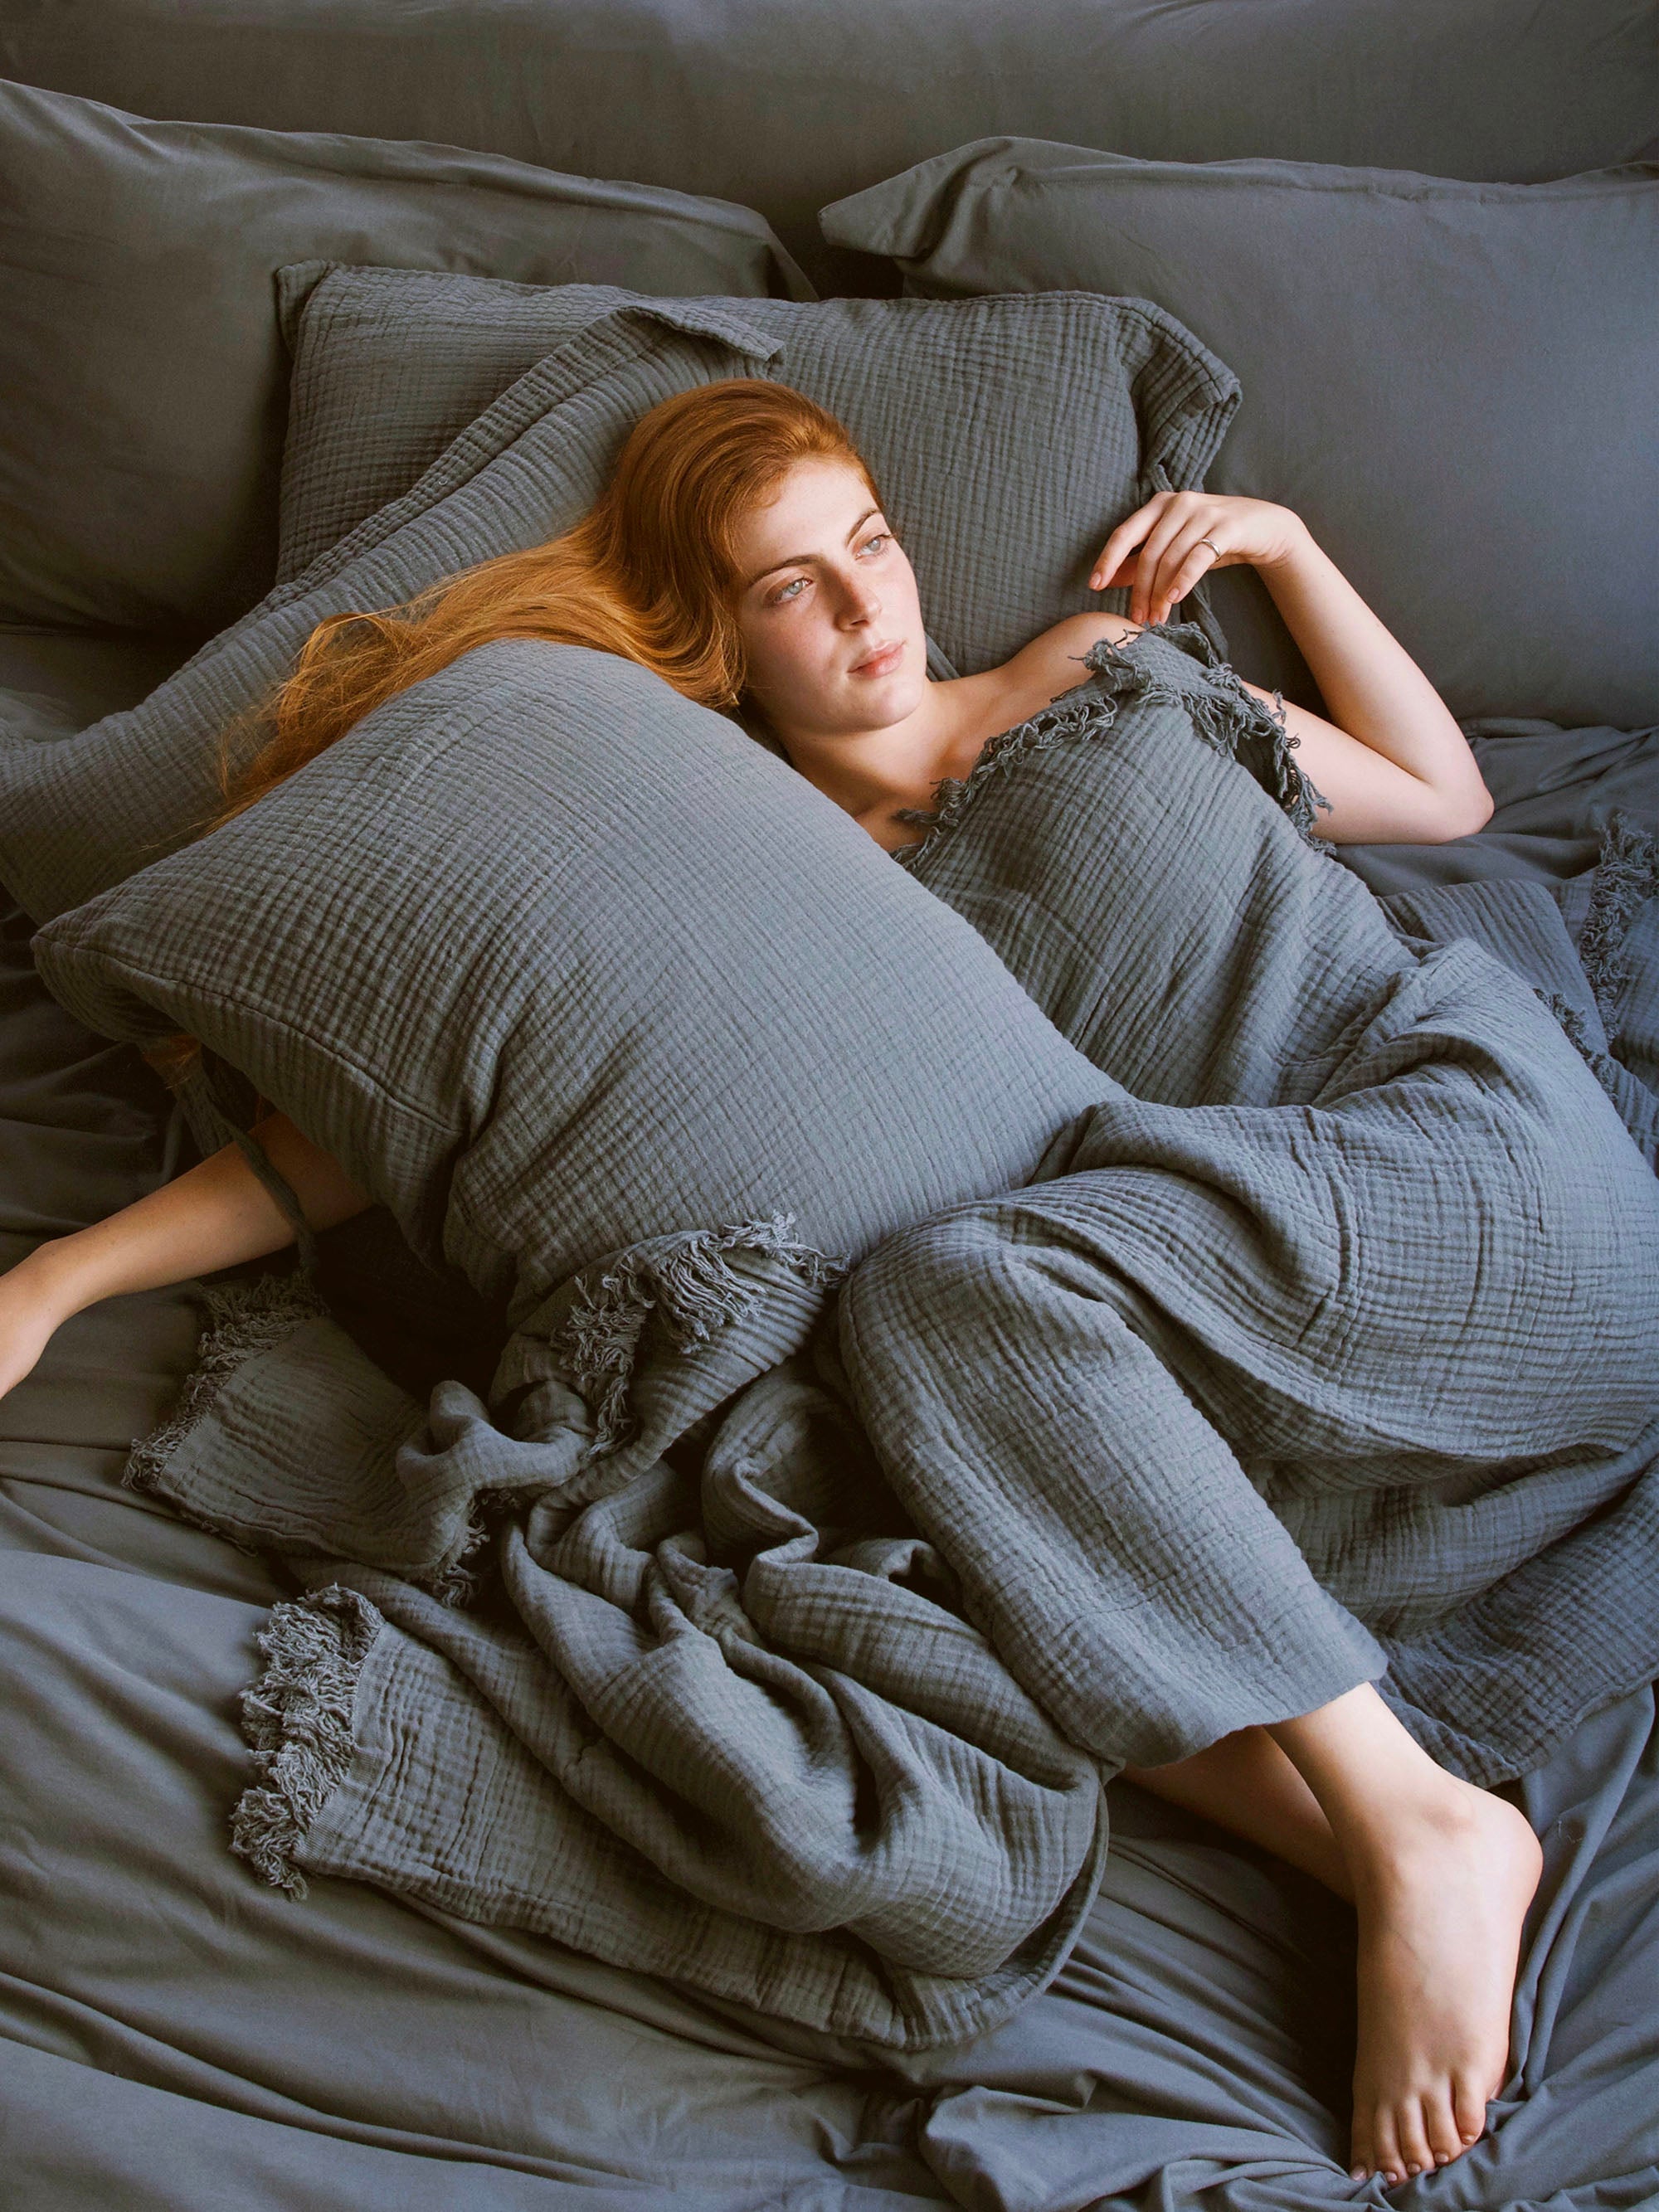 אישה מכוסה בשמיכה שוכבת על מיטה שלידה כרית עם ציפית לכרית בצבע אוושן 